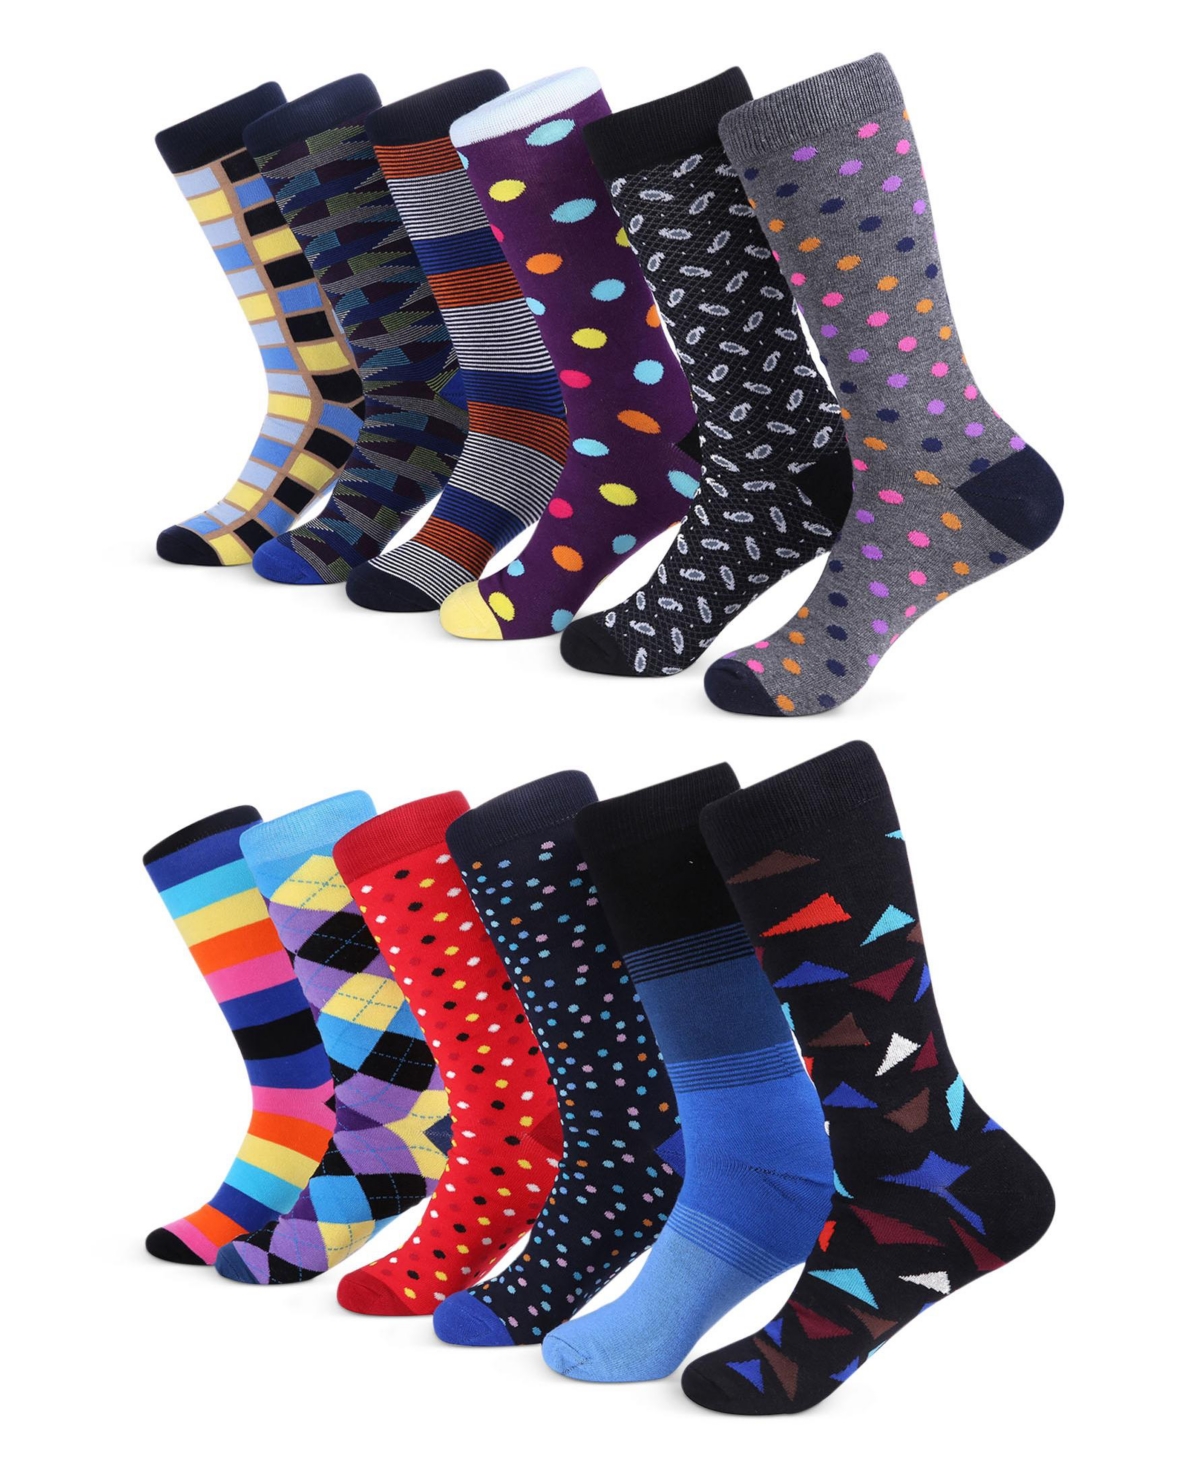 Men's Sensational Fun Dress Socks 12 Pack - Trendy colors